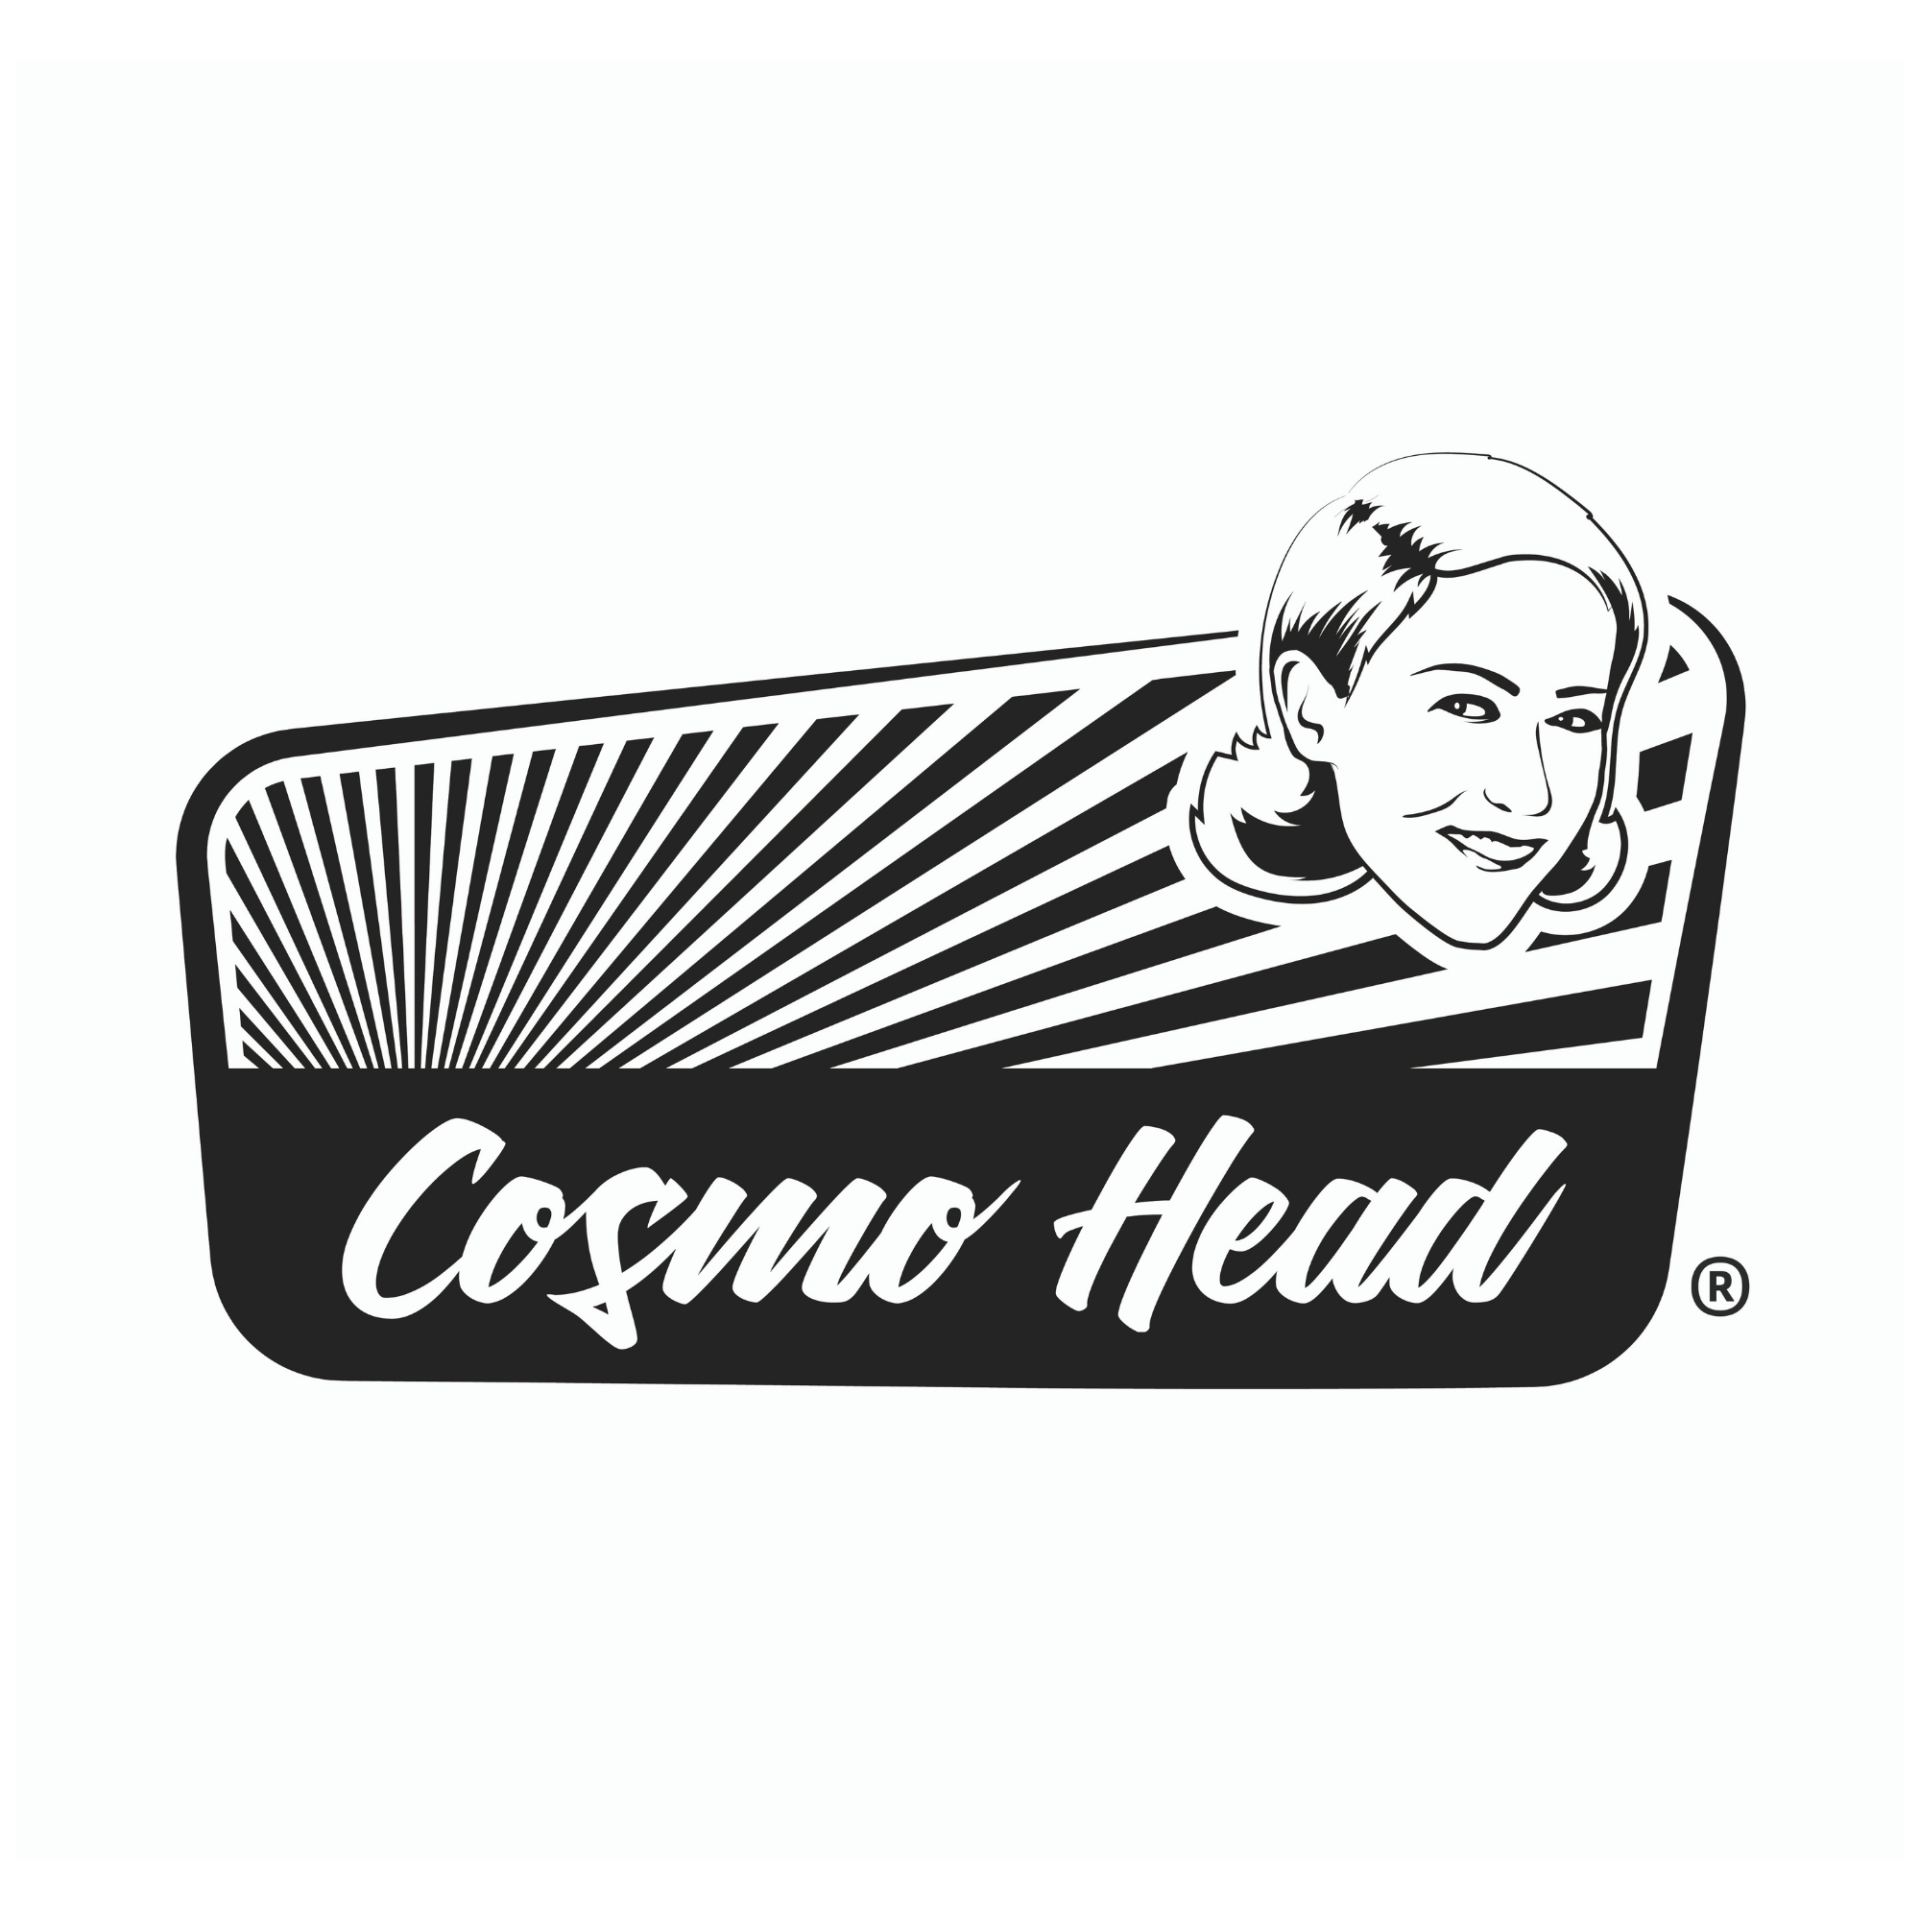 Cosmohead Friseur Term in einfach online buchen